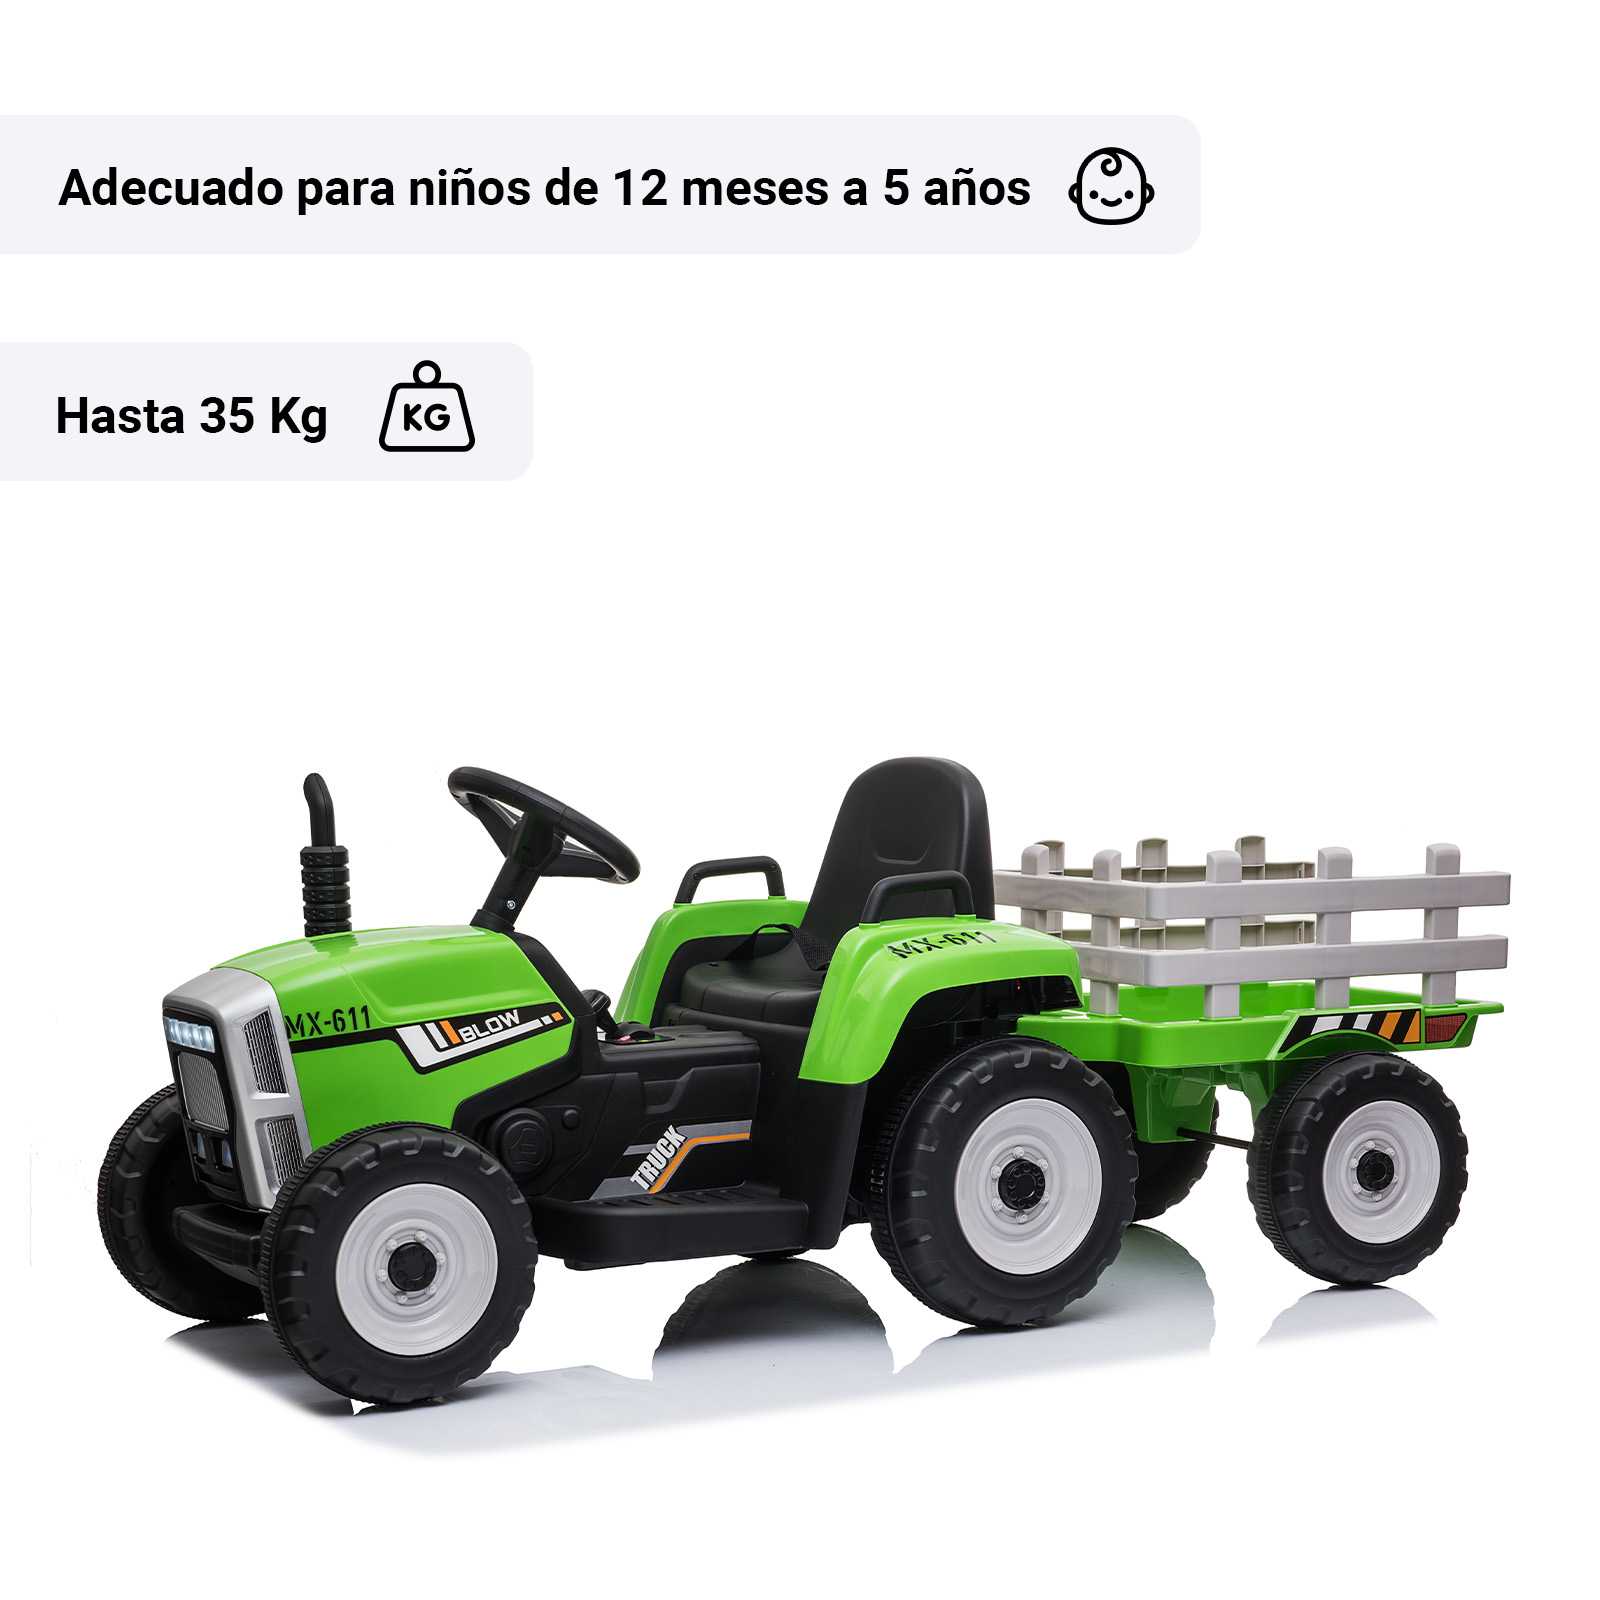 Tractor con remolque para niños